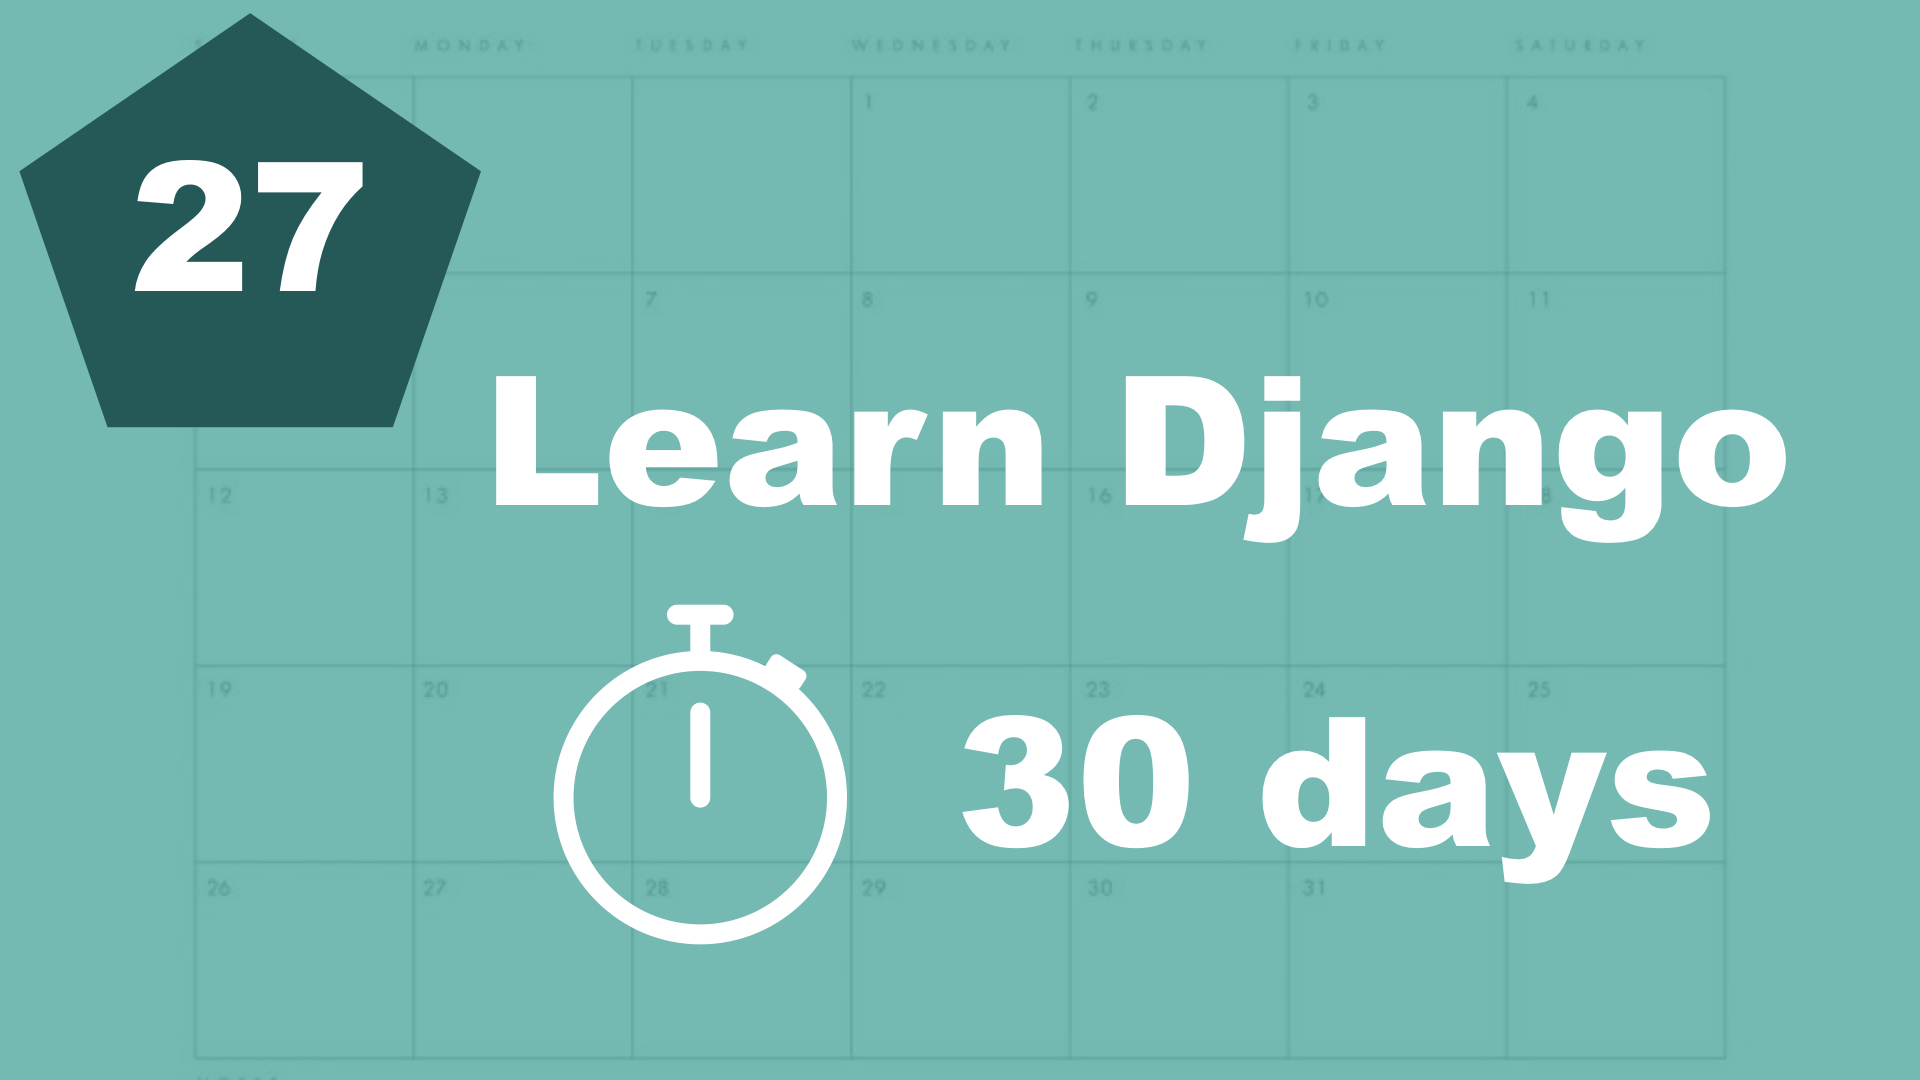 Template filters - 30 days of Django